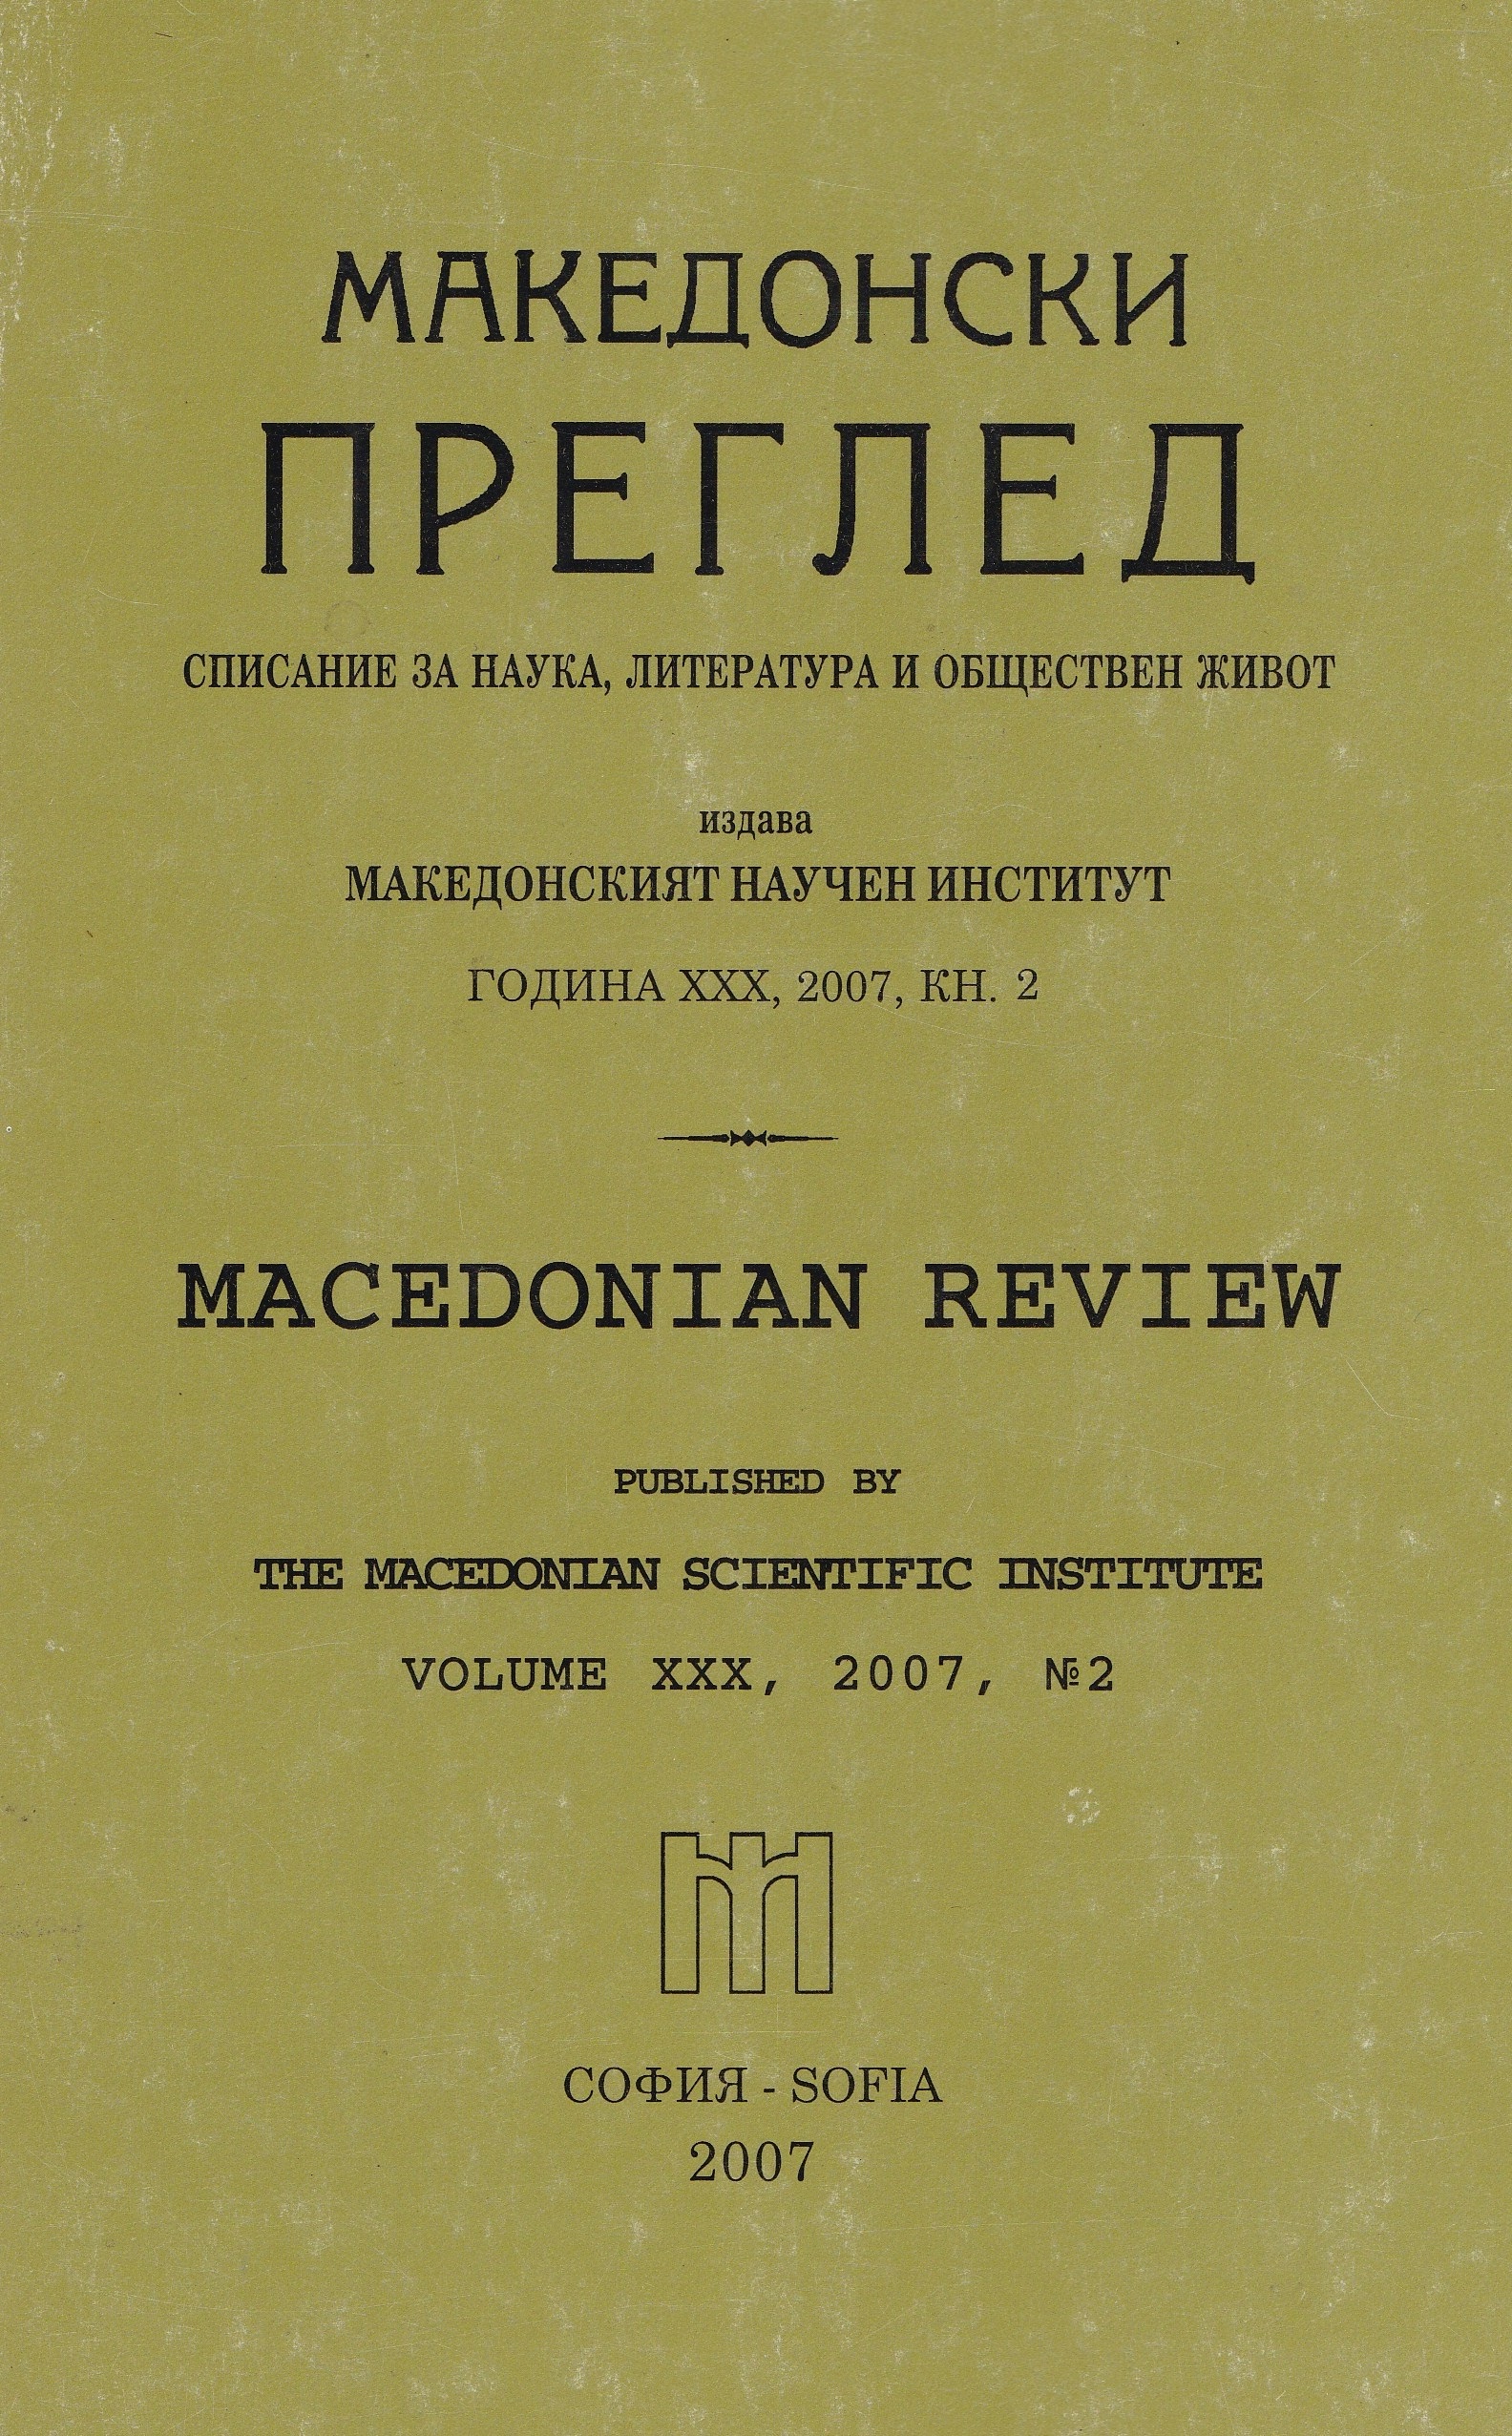 Българо-югославски разговори по македонския въпрос (Стенографски протоколи, септември 1976 г.)